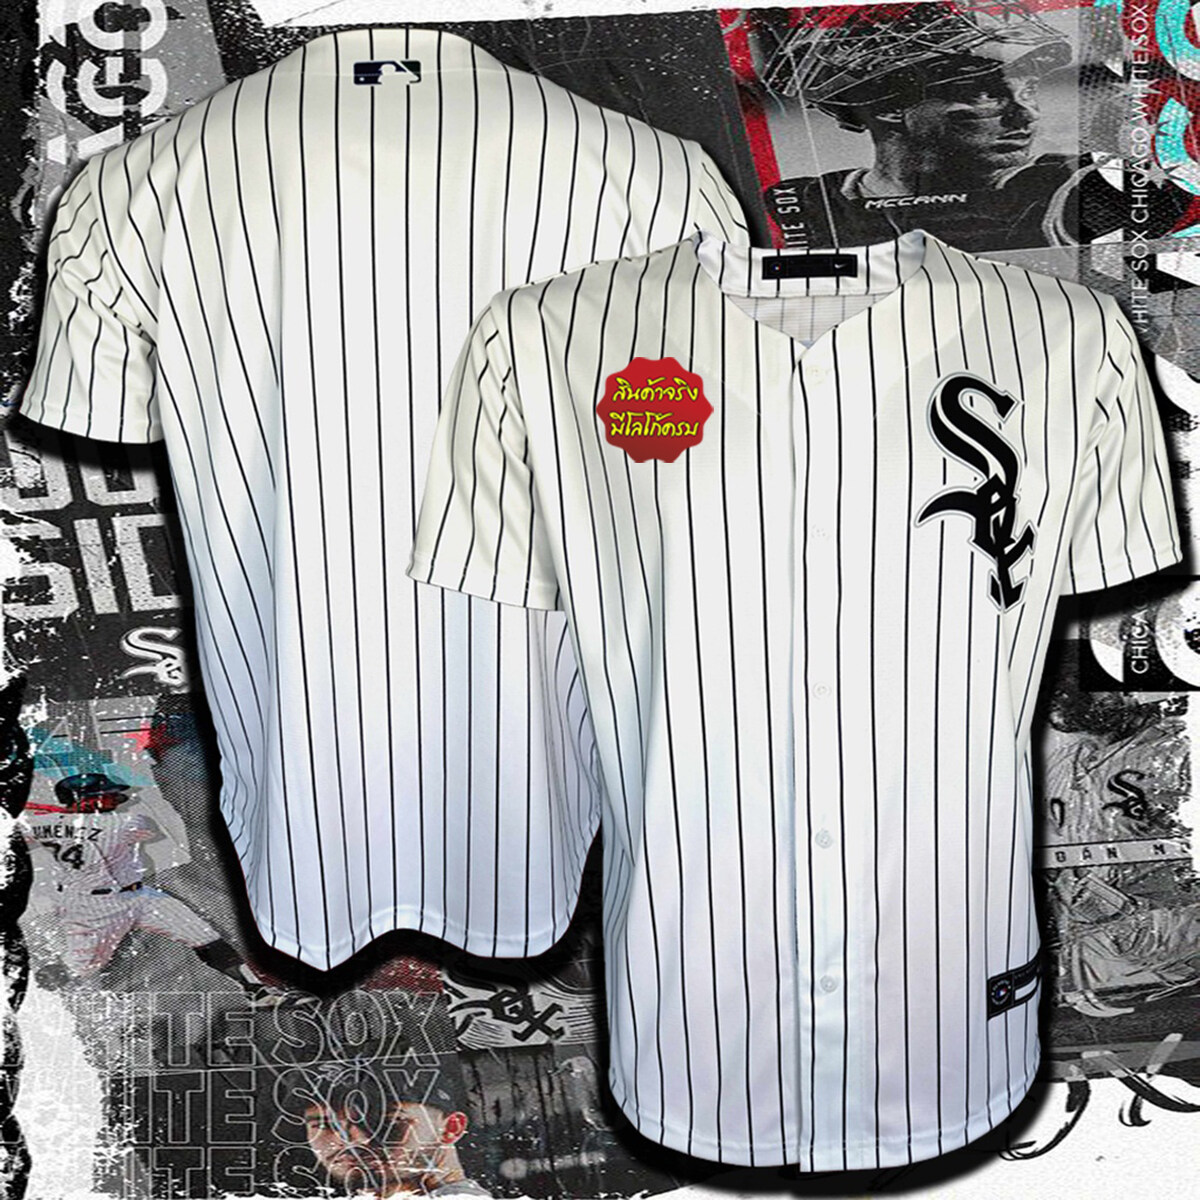 เสื้อเบสบอล Baseball Jerseys Chicago White Sox ชิคาโก ไวท์ ซอกซ์